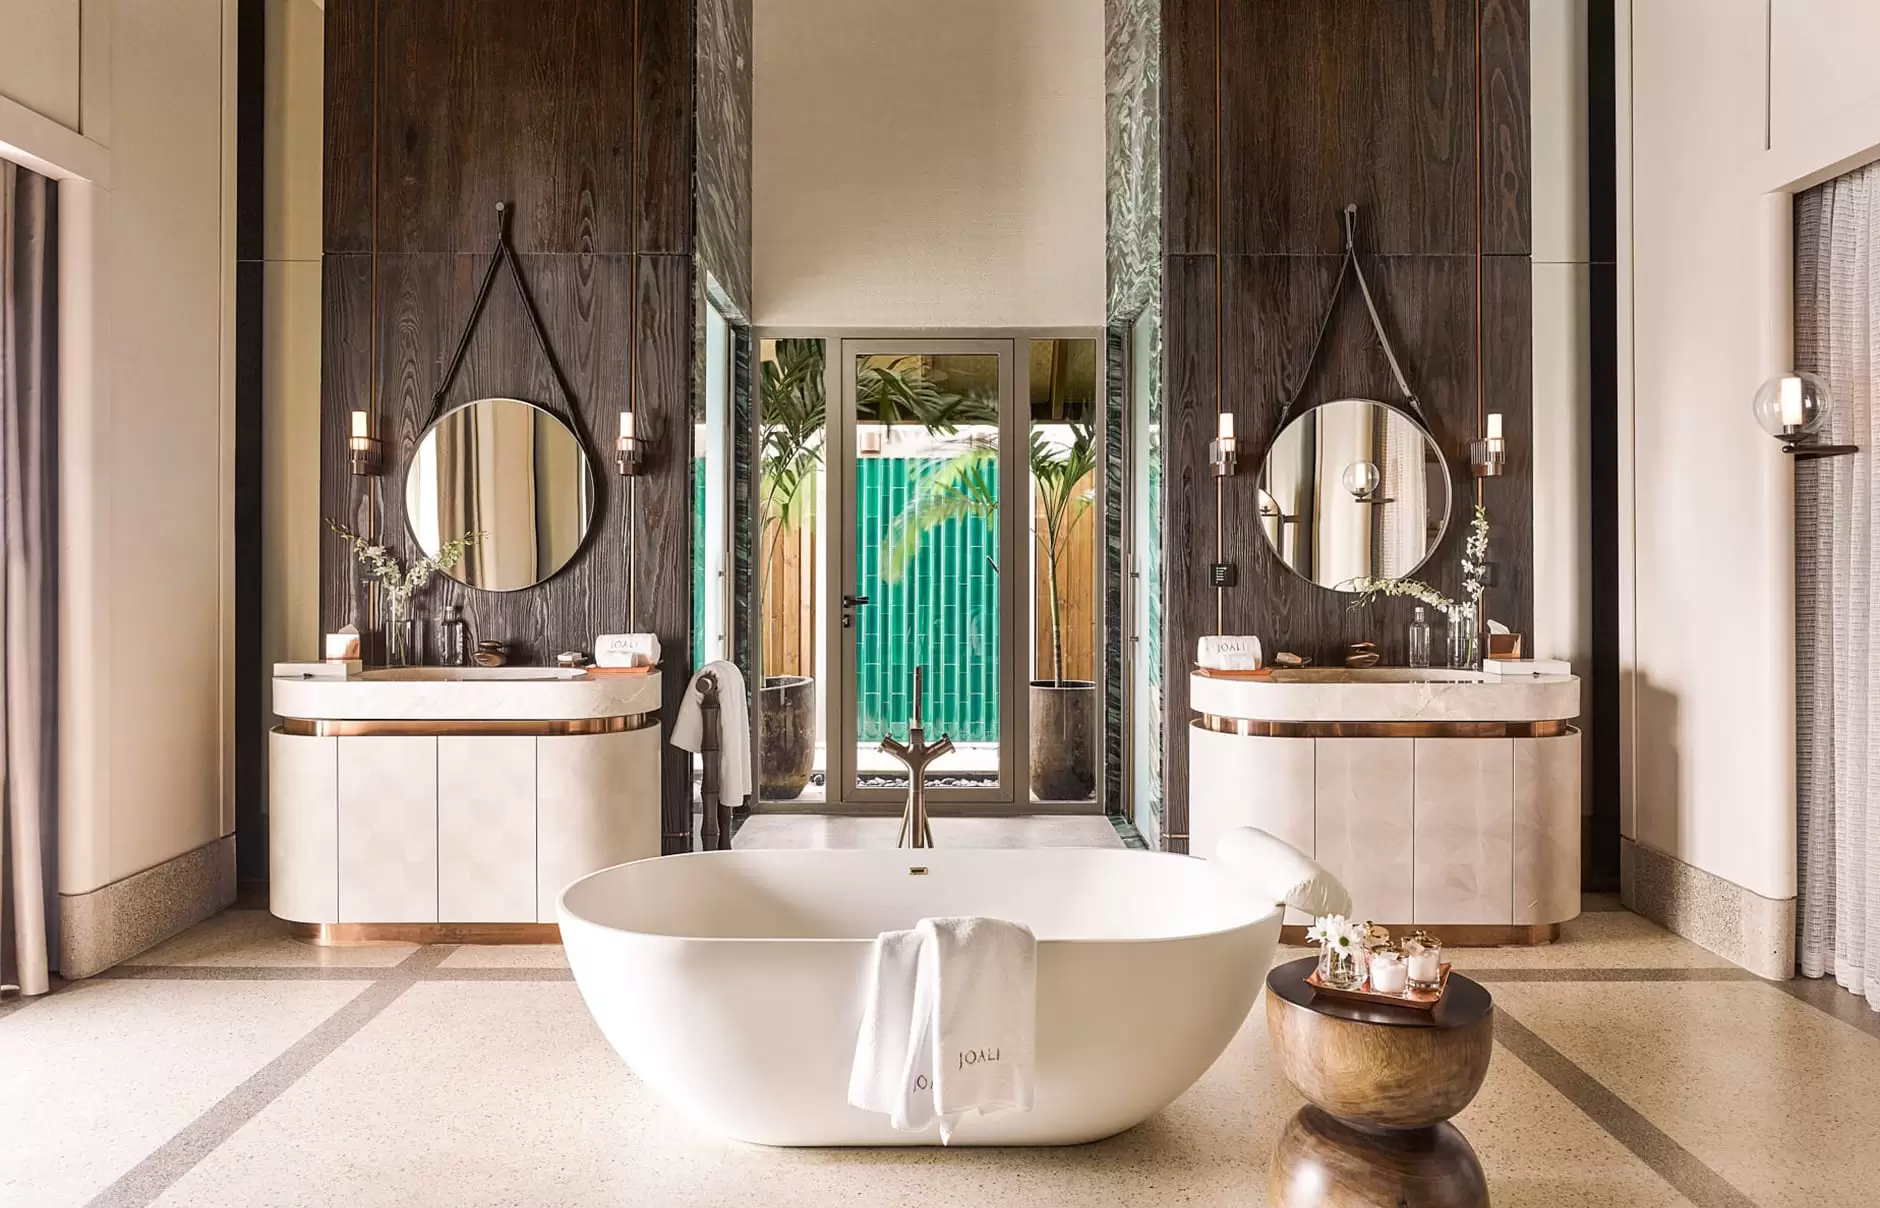 Phòng tắm Luxury tập trung vào cách bố trí nội thất đối xứng, cân bằng